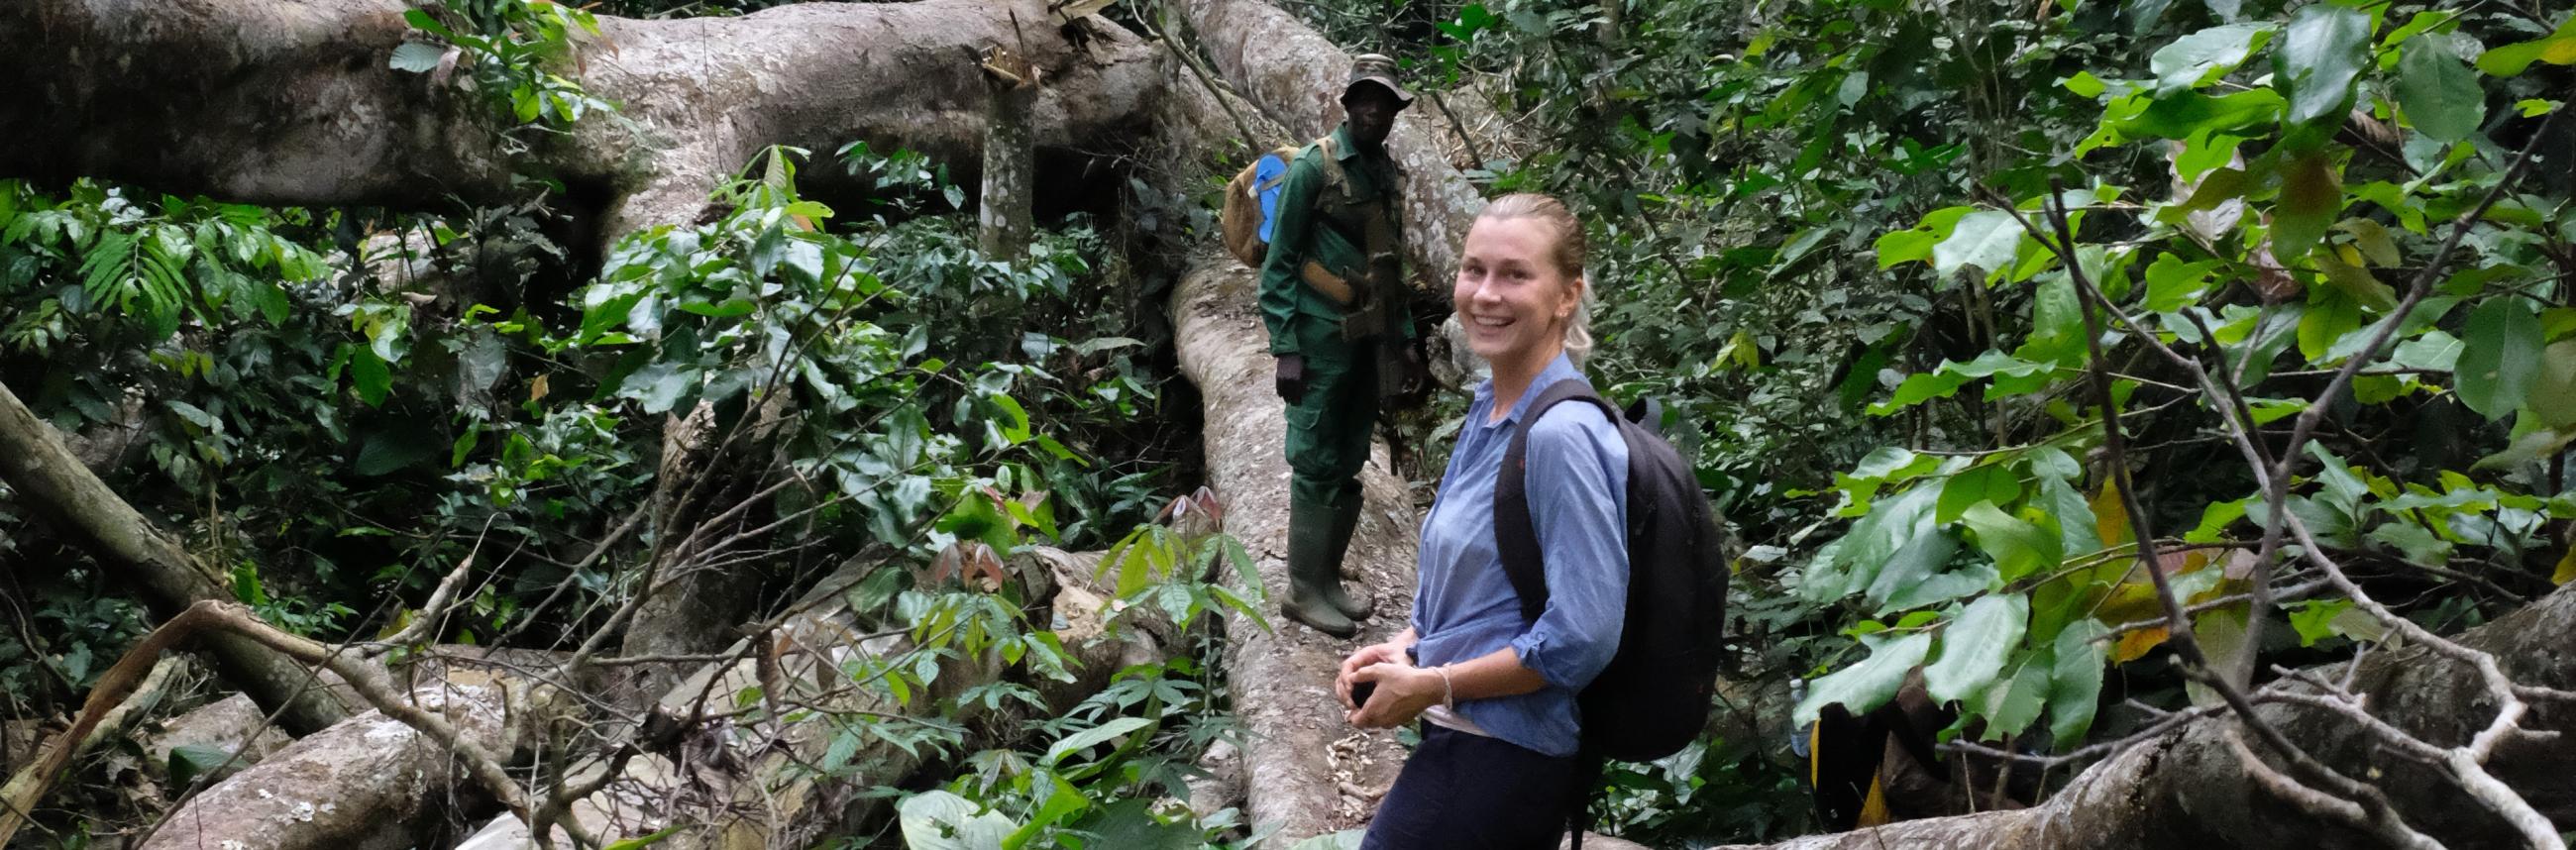 Ingeborg Mägi keskkonnakorraldus WWF väliretk kamerun vihmamets boumba bek rahvuspark